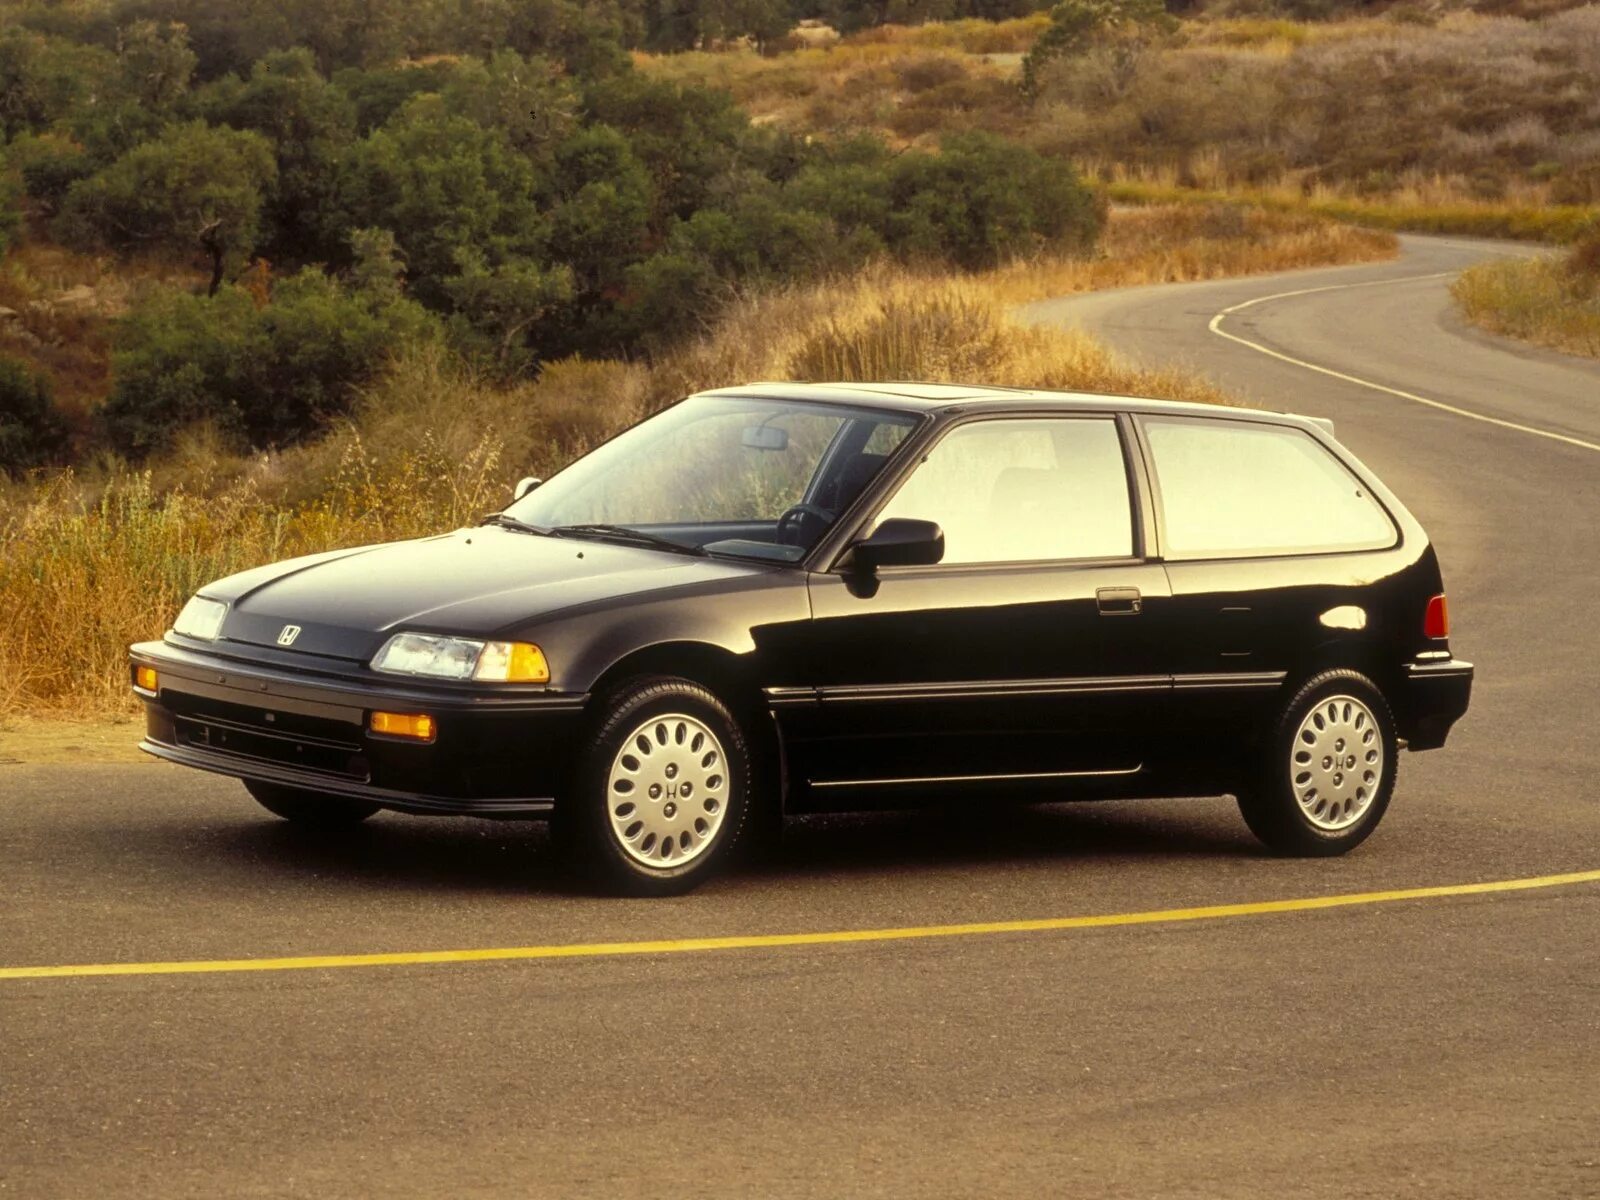 Honda Civic 4 поколение хэтчбек. Хонда Цивик 4 поколения. Ханда Сивик 4 поколение. Honda Civic 1989 хэтчбек.